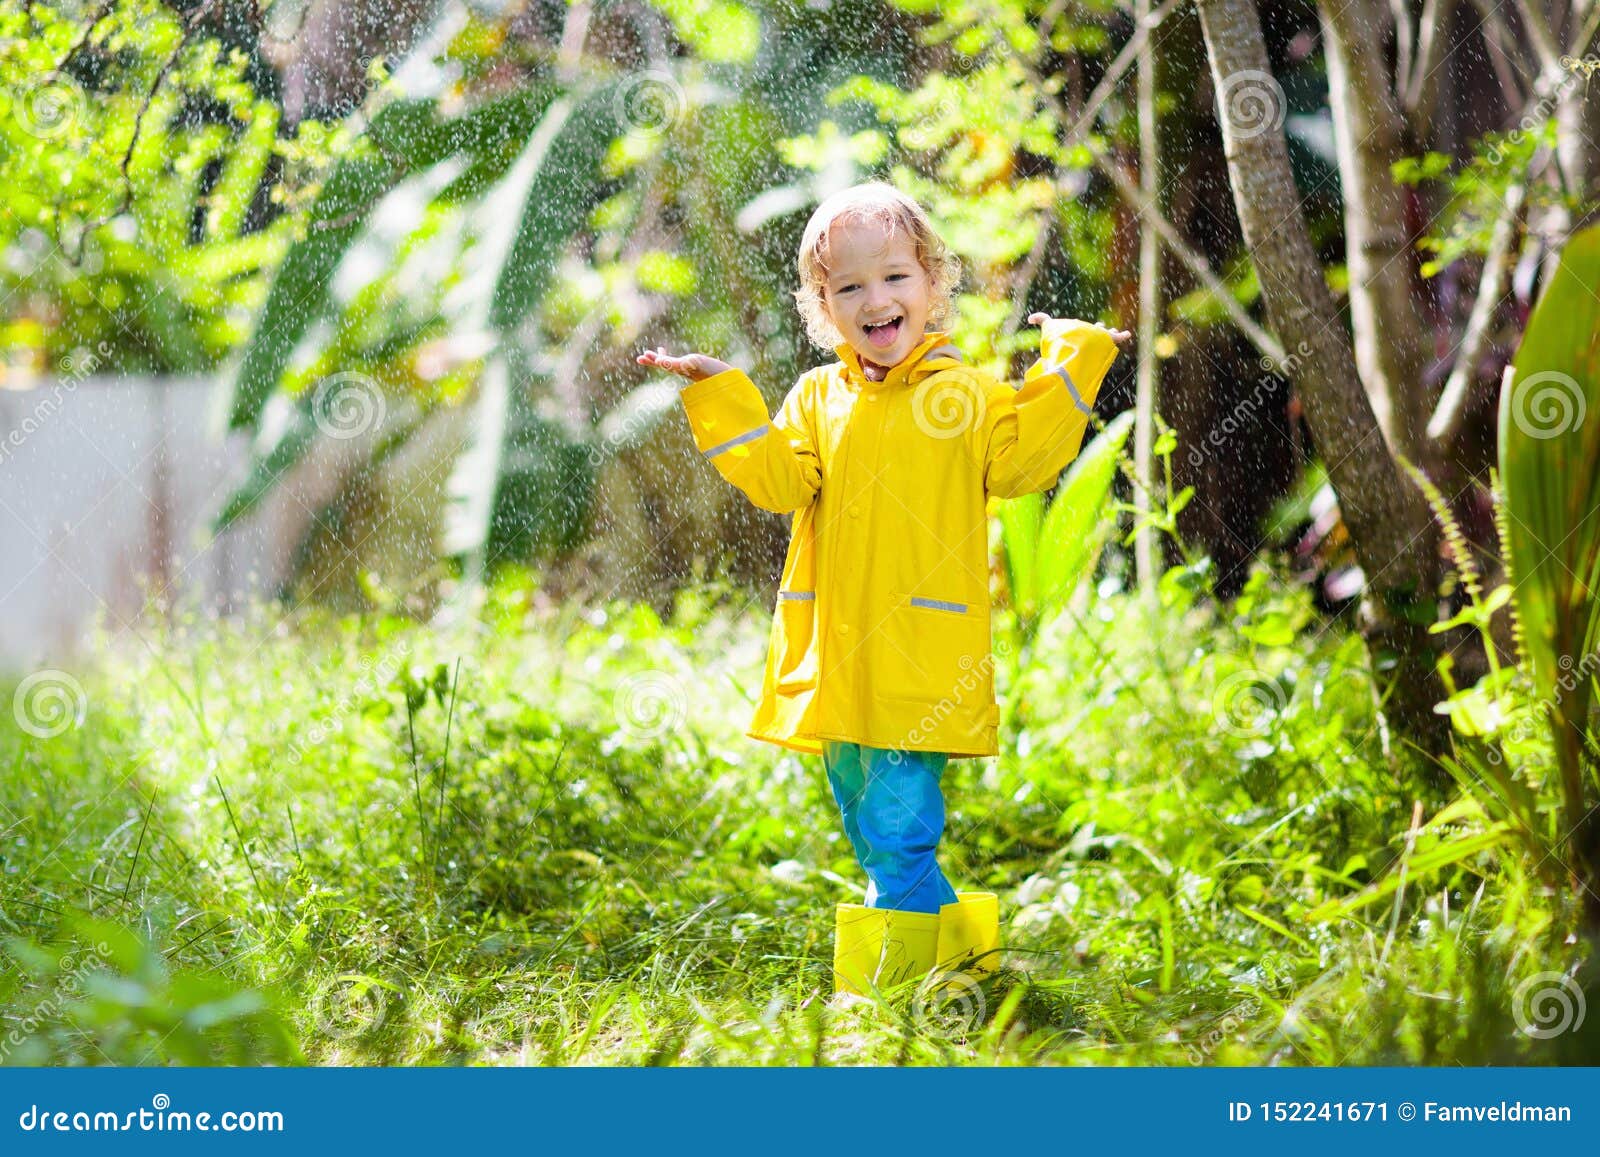 kind das im regen spielt kind mit regenschirm stockbild